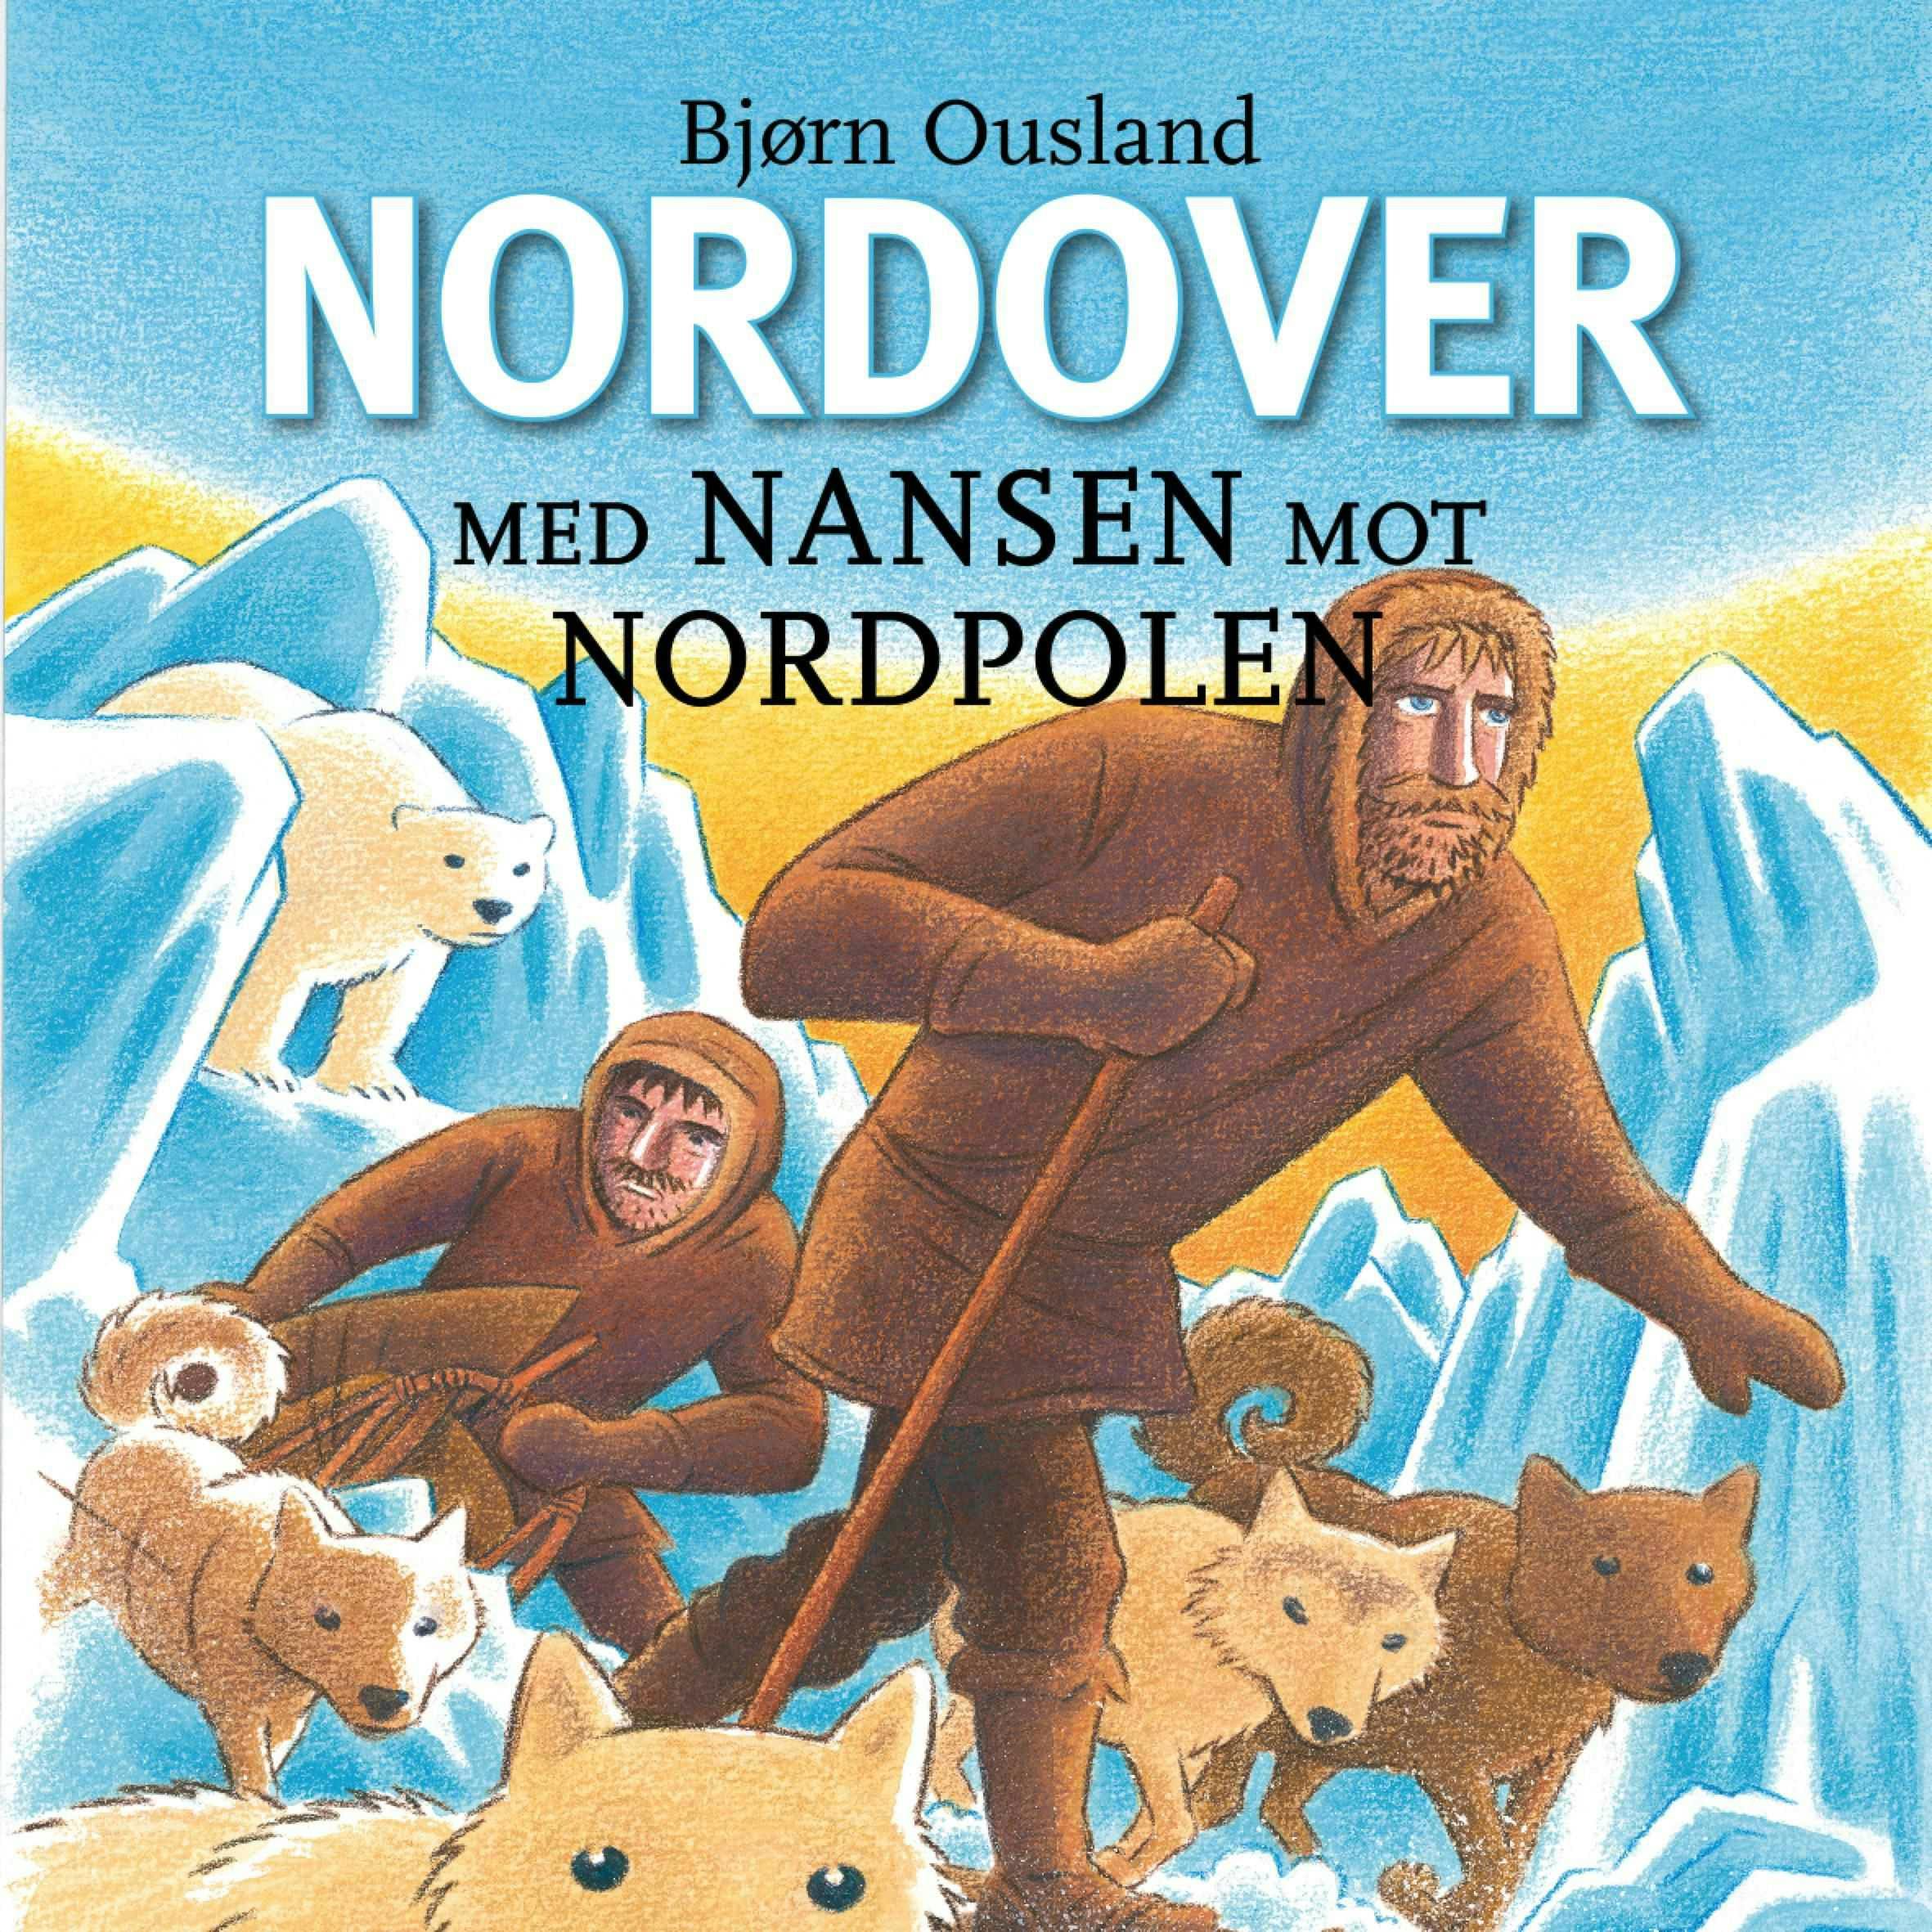 Nordover - Med Nansen mot Nordpolen - undefined